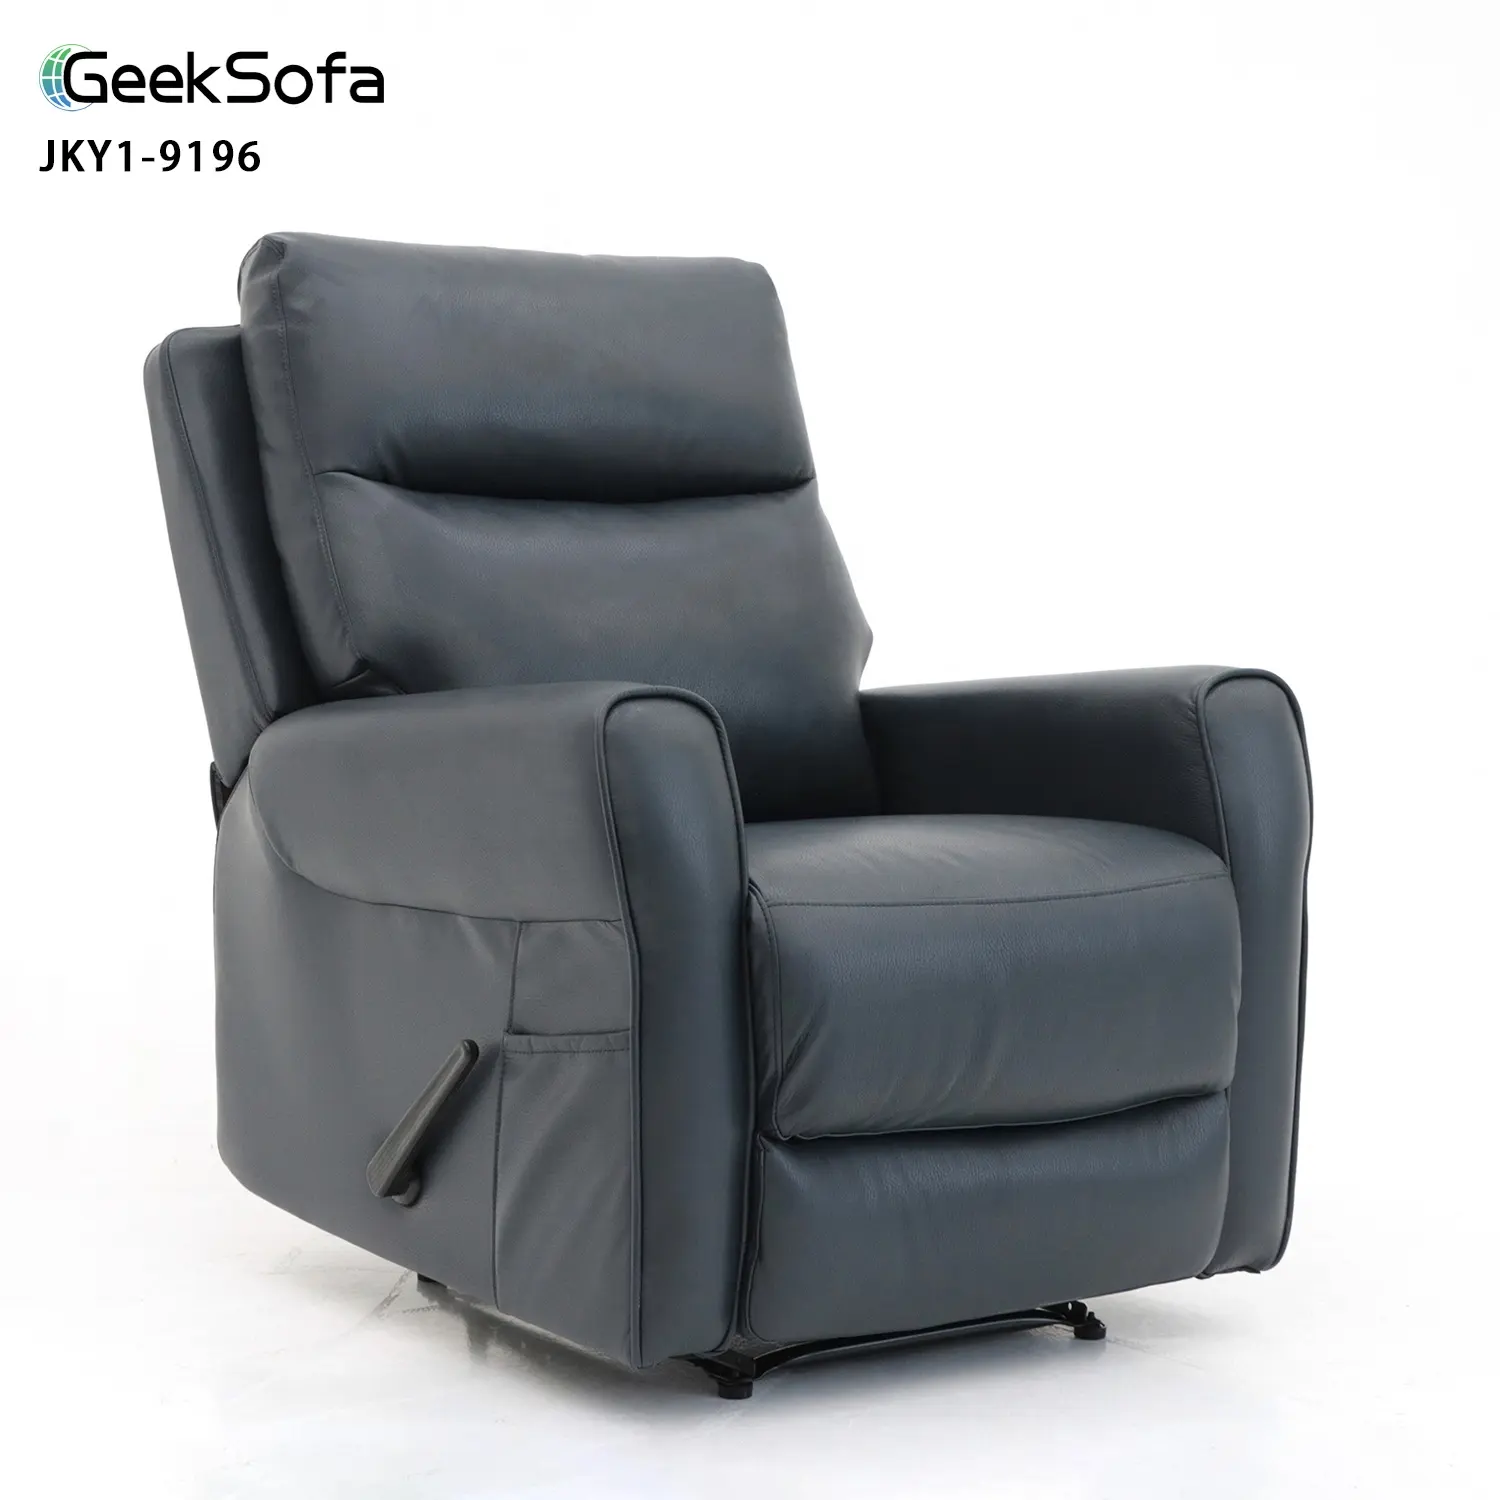 Geeksofa fabbrica all'ingrosso pigro ragazzo moderno in microfibra tessuto manuale reclinabile sedia per soggiorno mobili